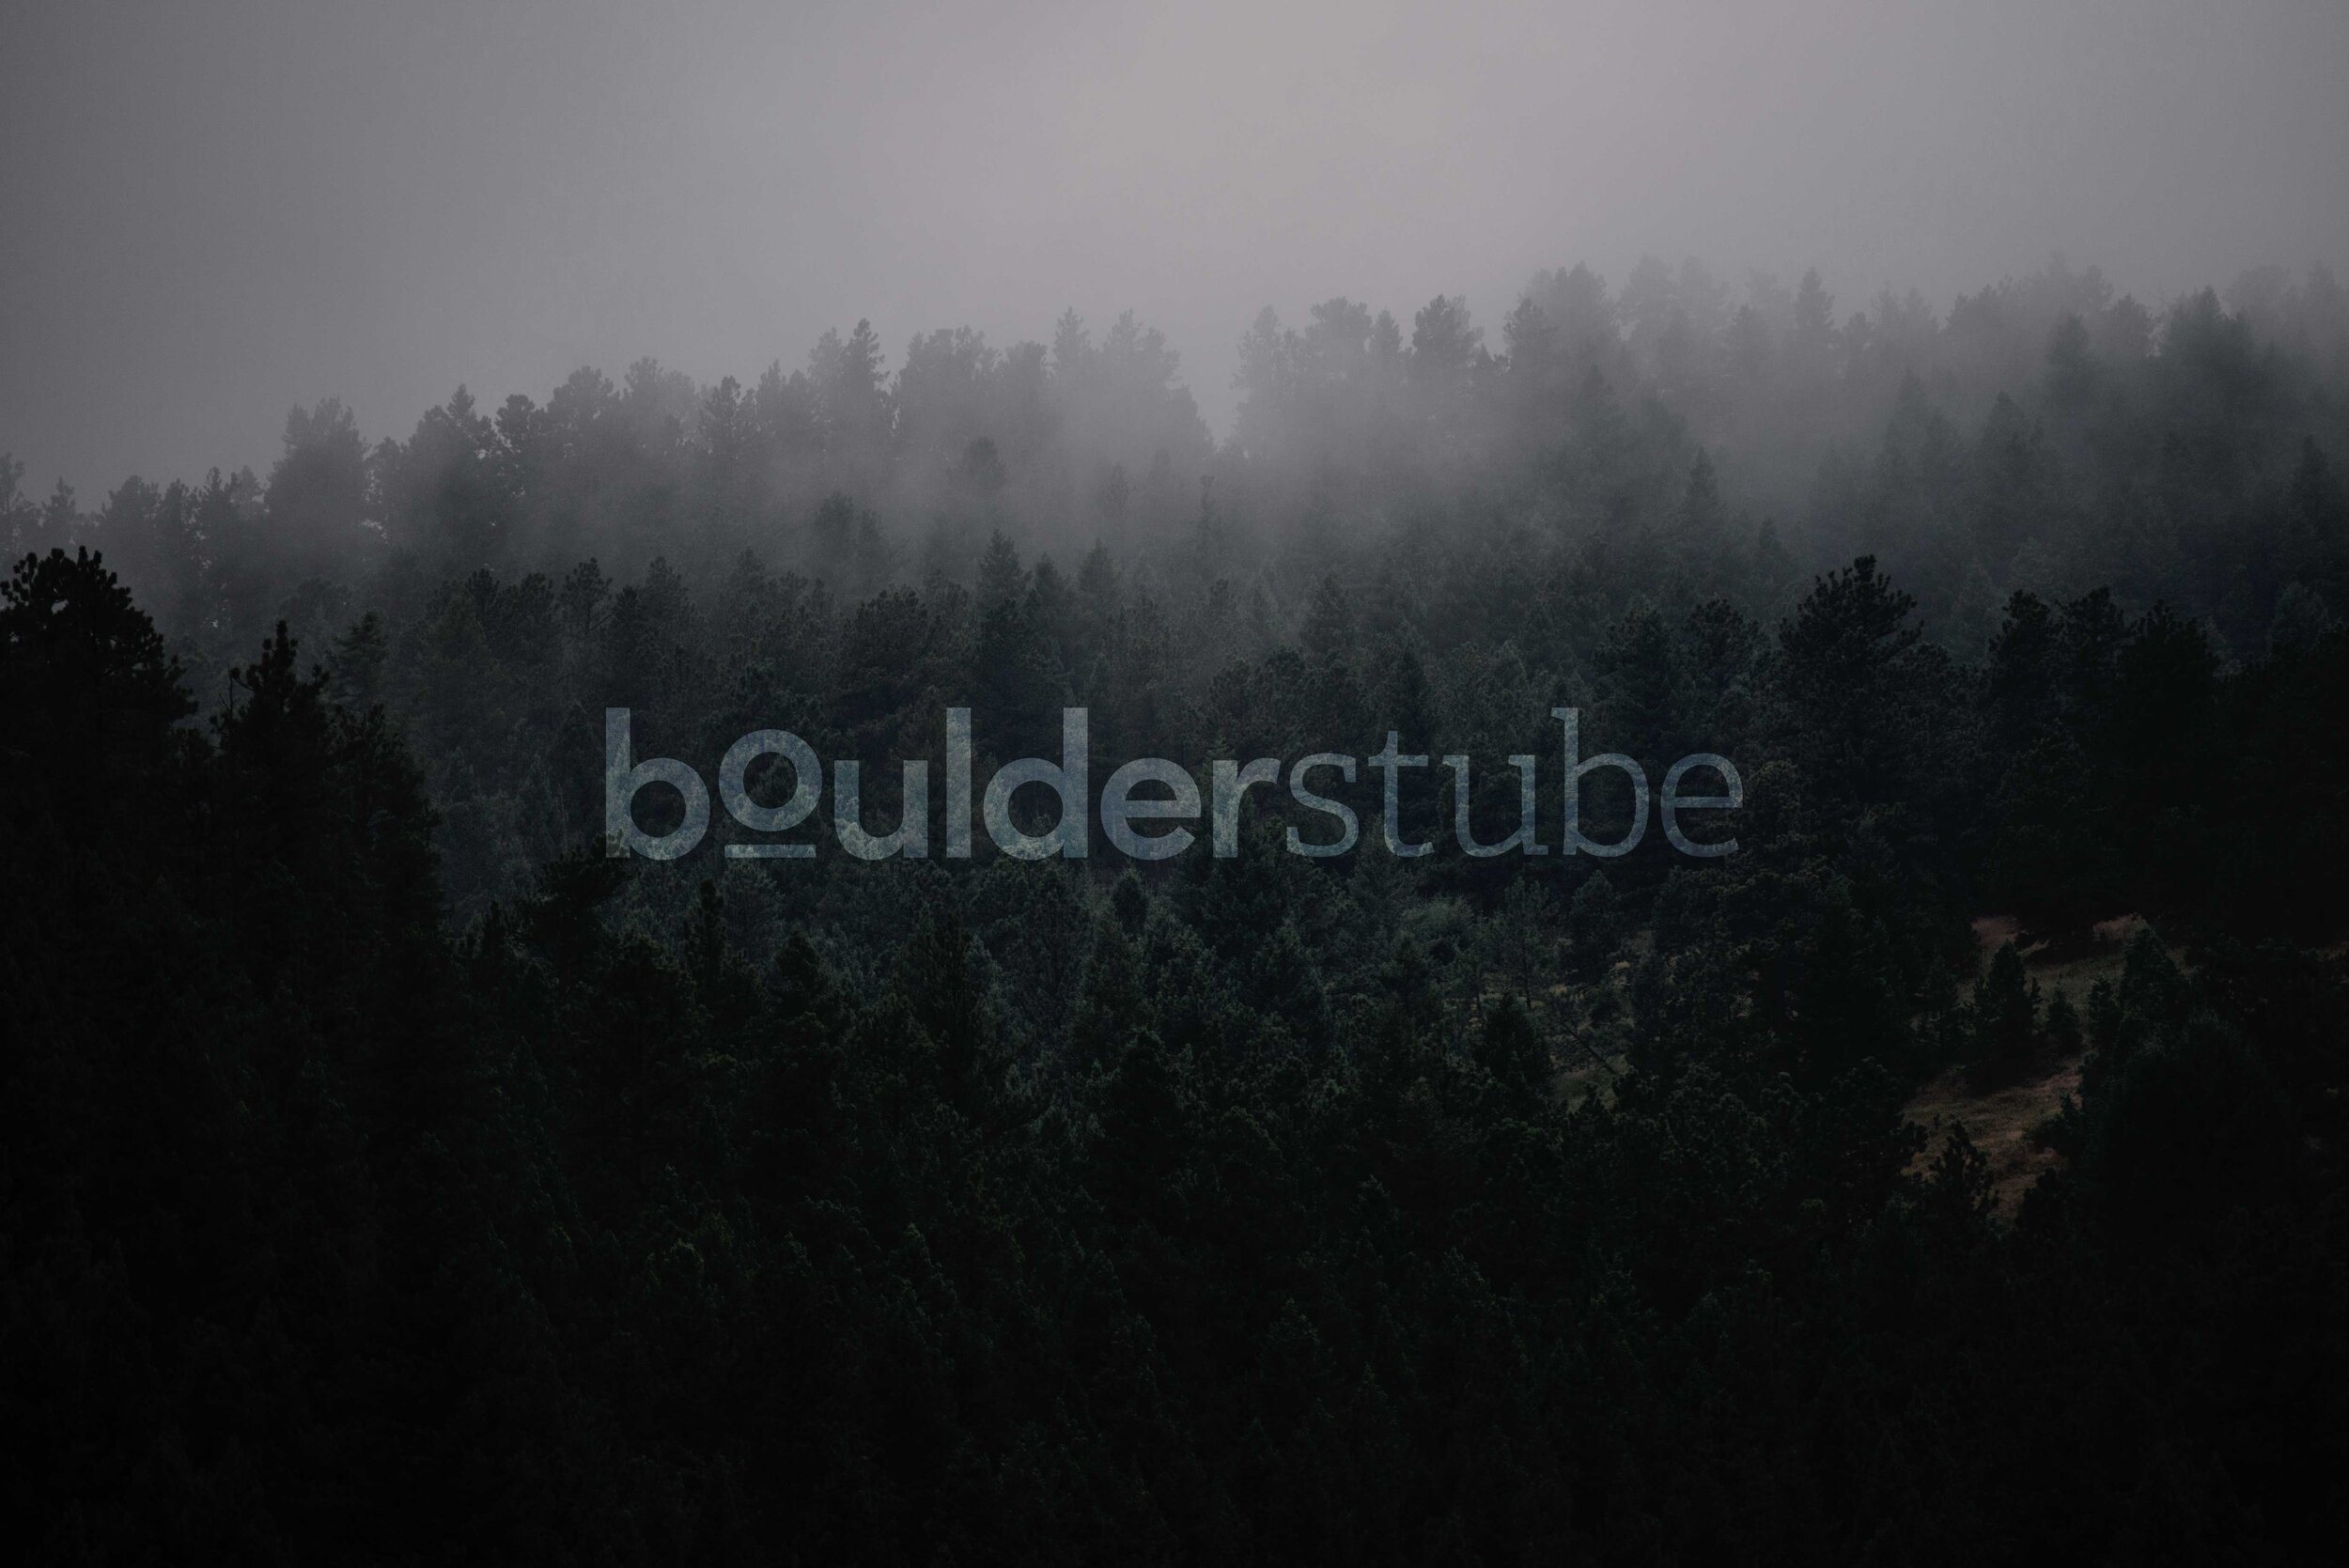 boulderstube_Logo_Einzeiler.jpg